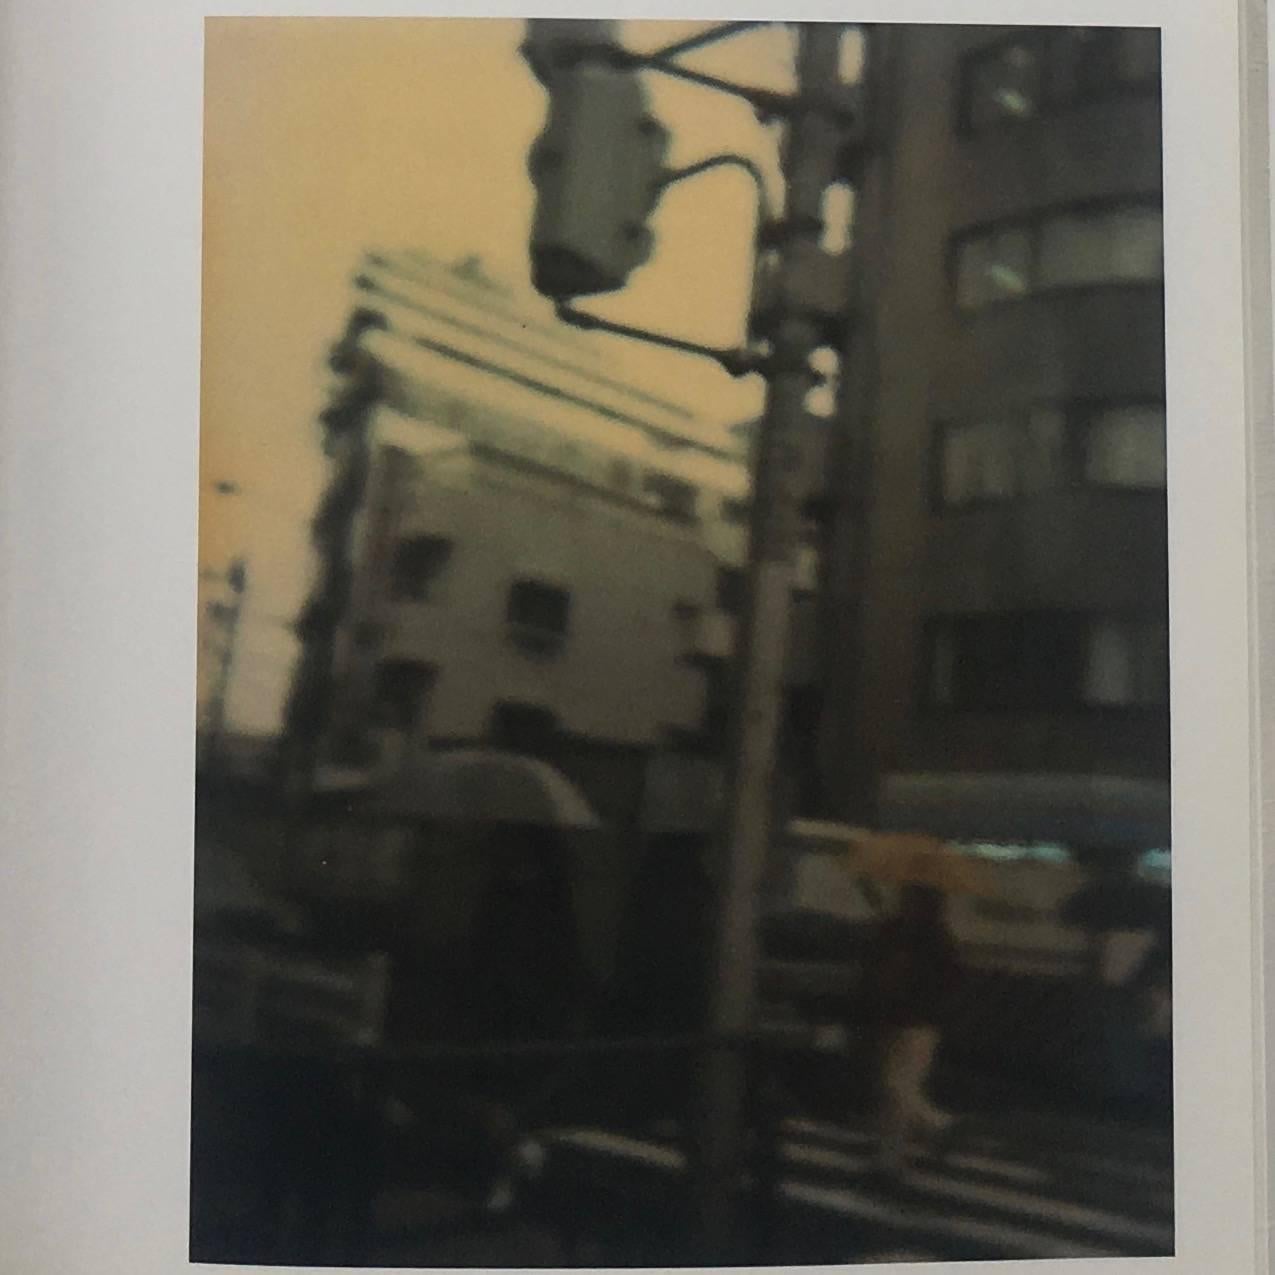 Primera edición, rústica, publicada por Metalogue Corp. Japón, 1999 

Hay algo inexplicablemente atrayente en esta publicación, páginas altas con fotografías de tamaño pequeño. Muchas de ellas se enfrentan como si fueran gemelas, dos tomas del